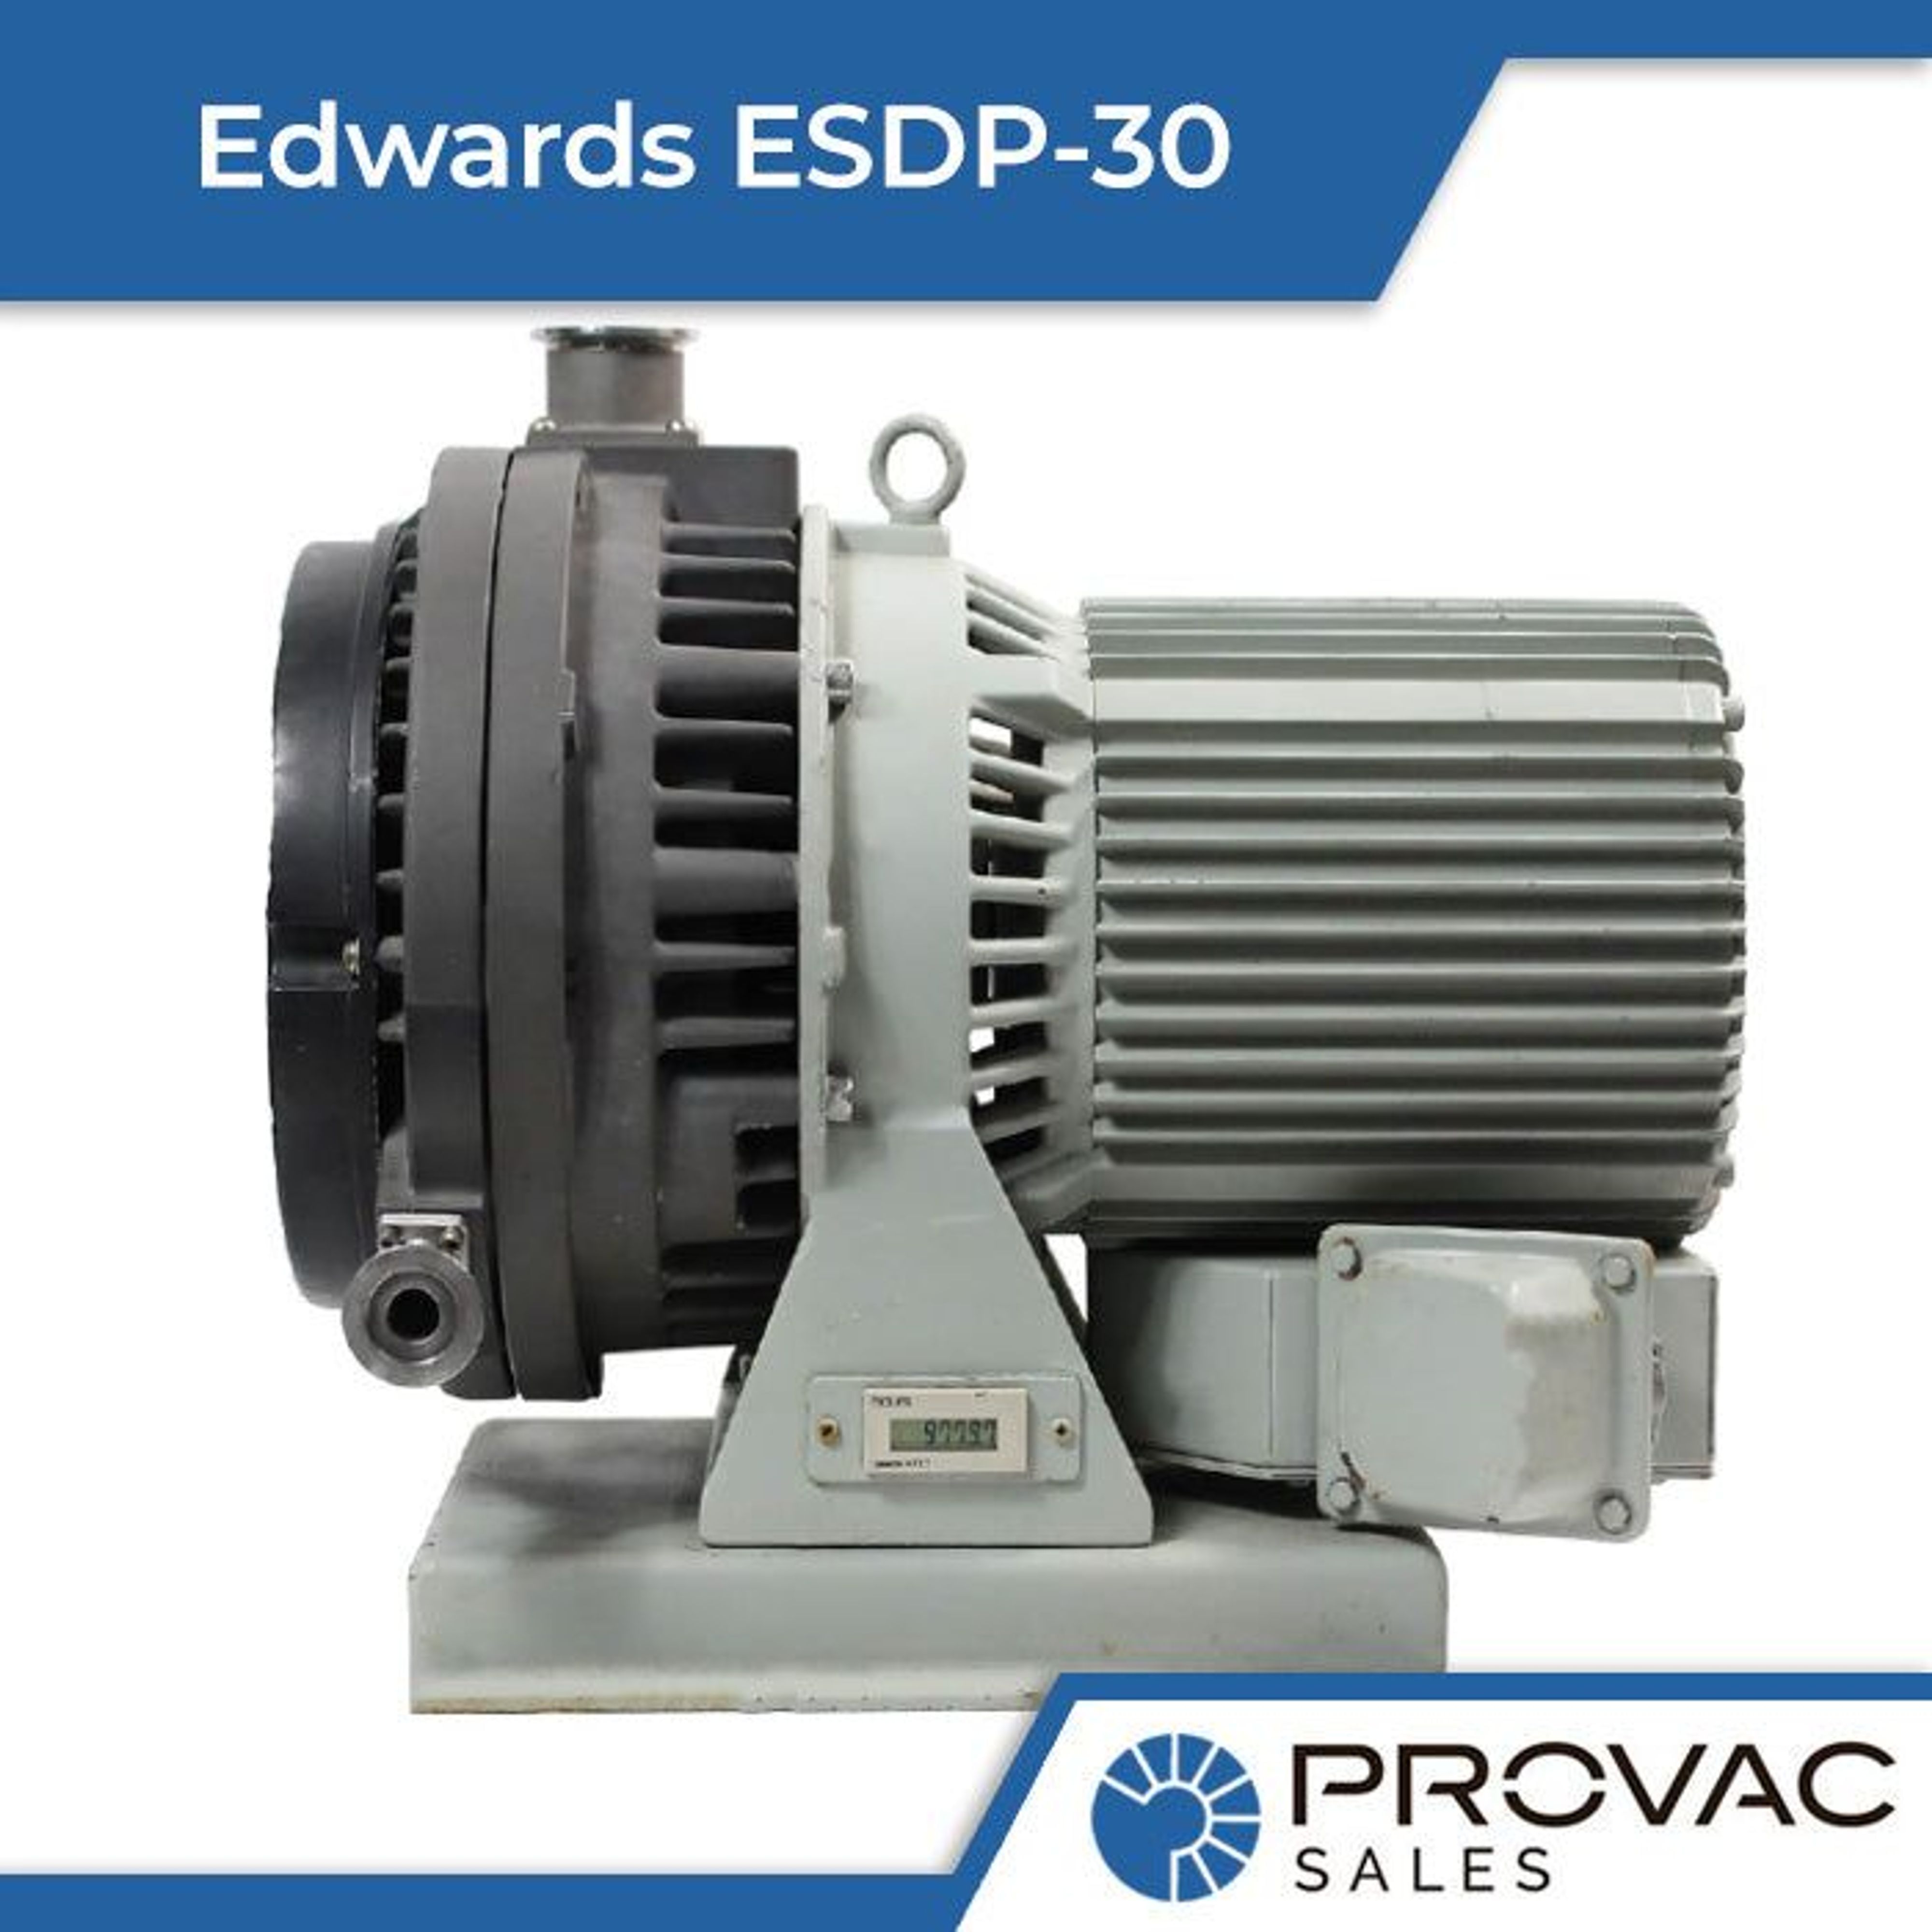 Edwards ESDP-30 Scroll Pump Background